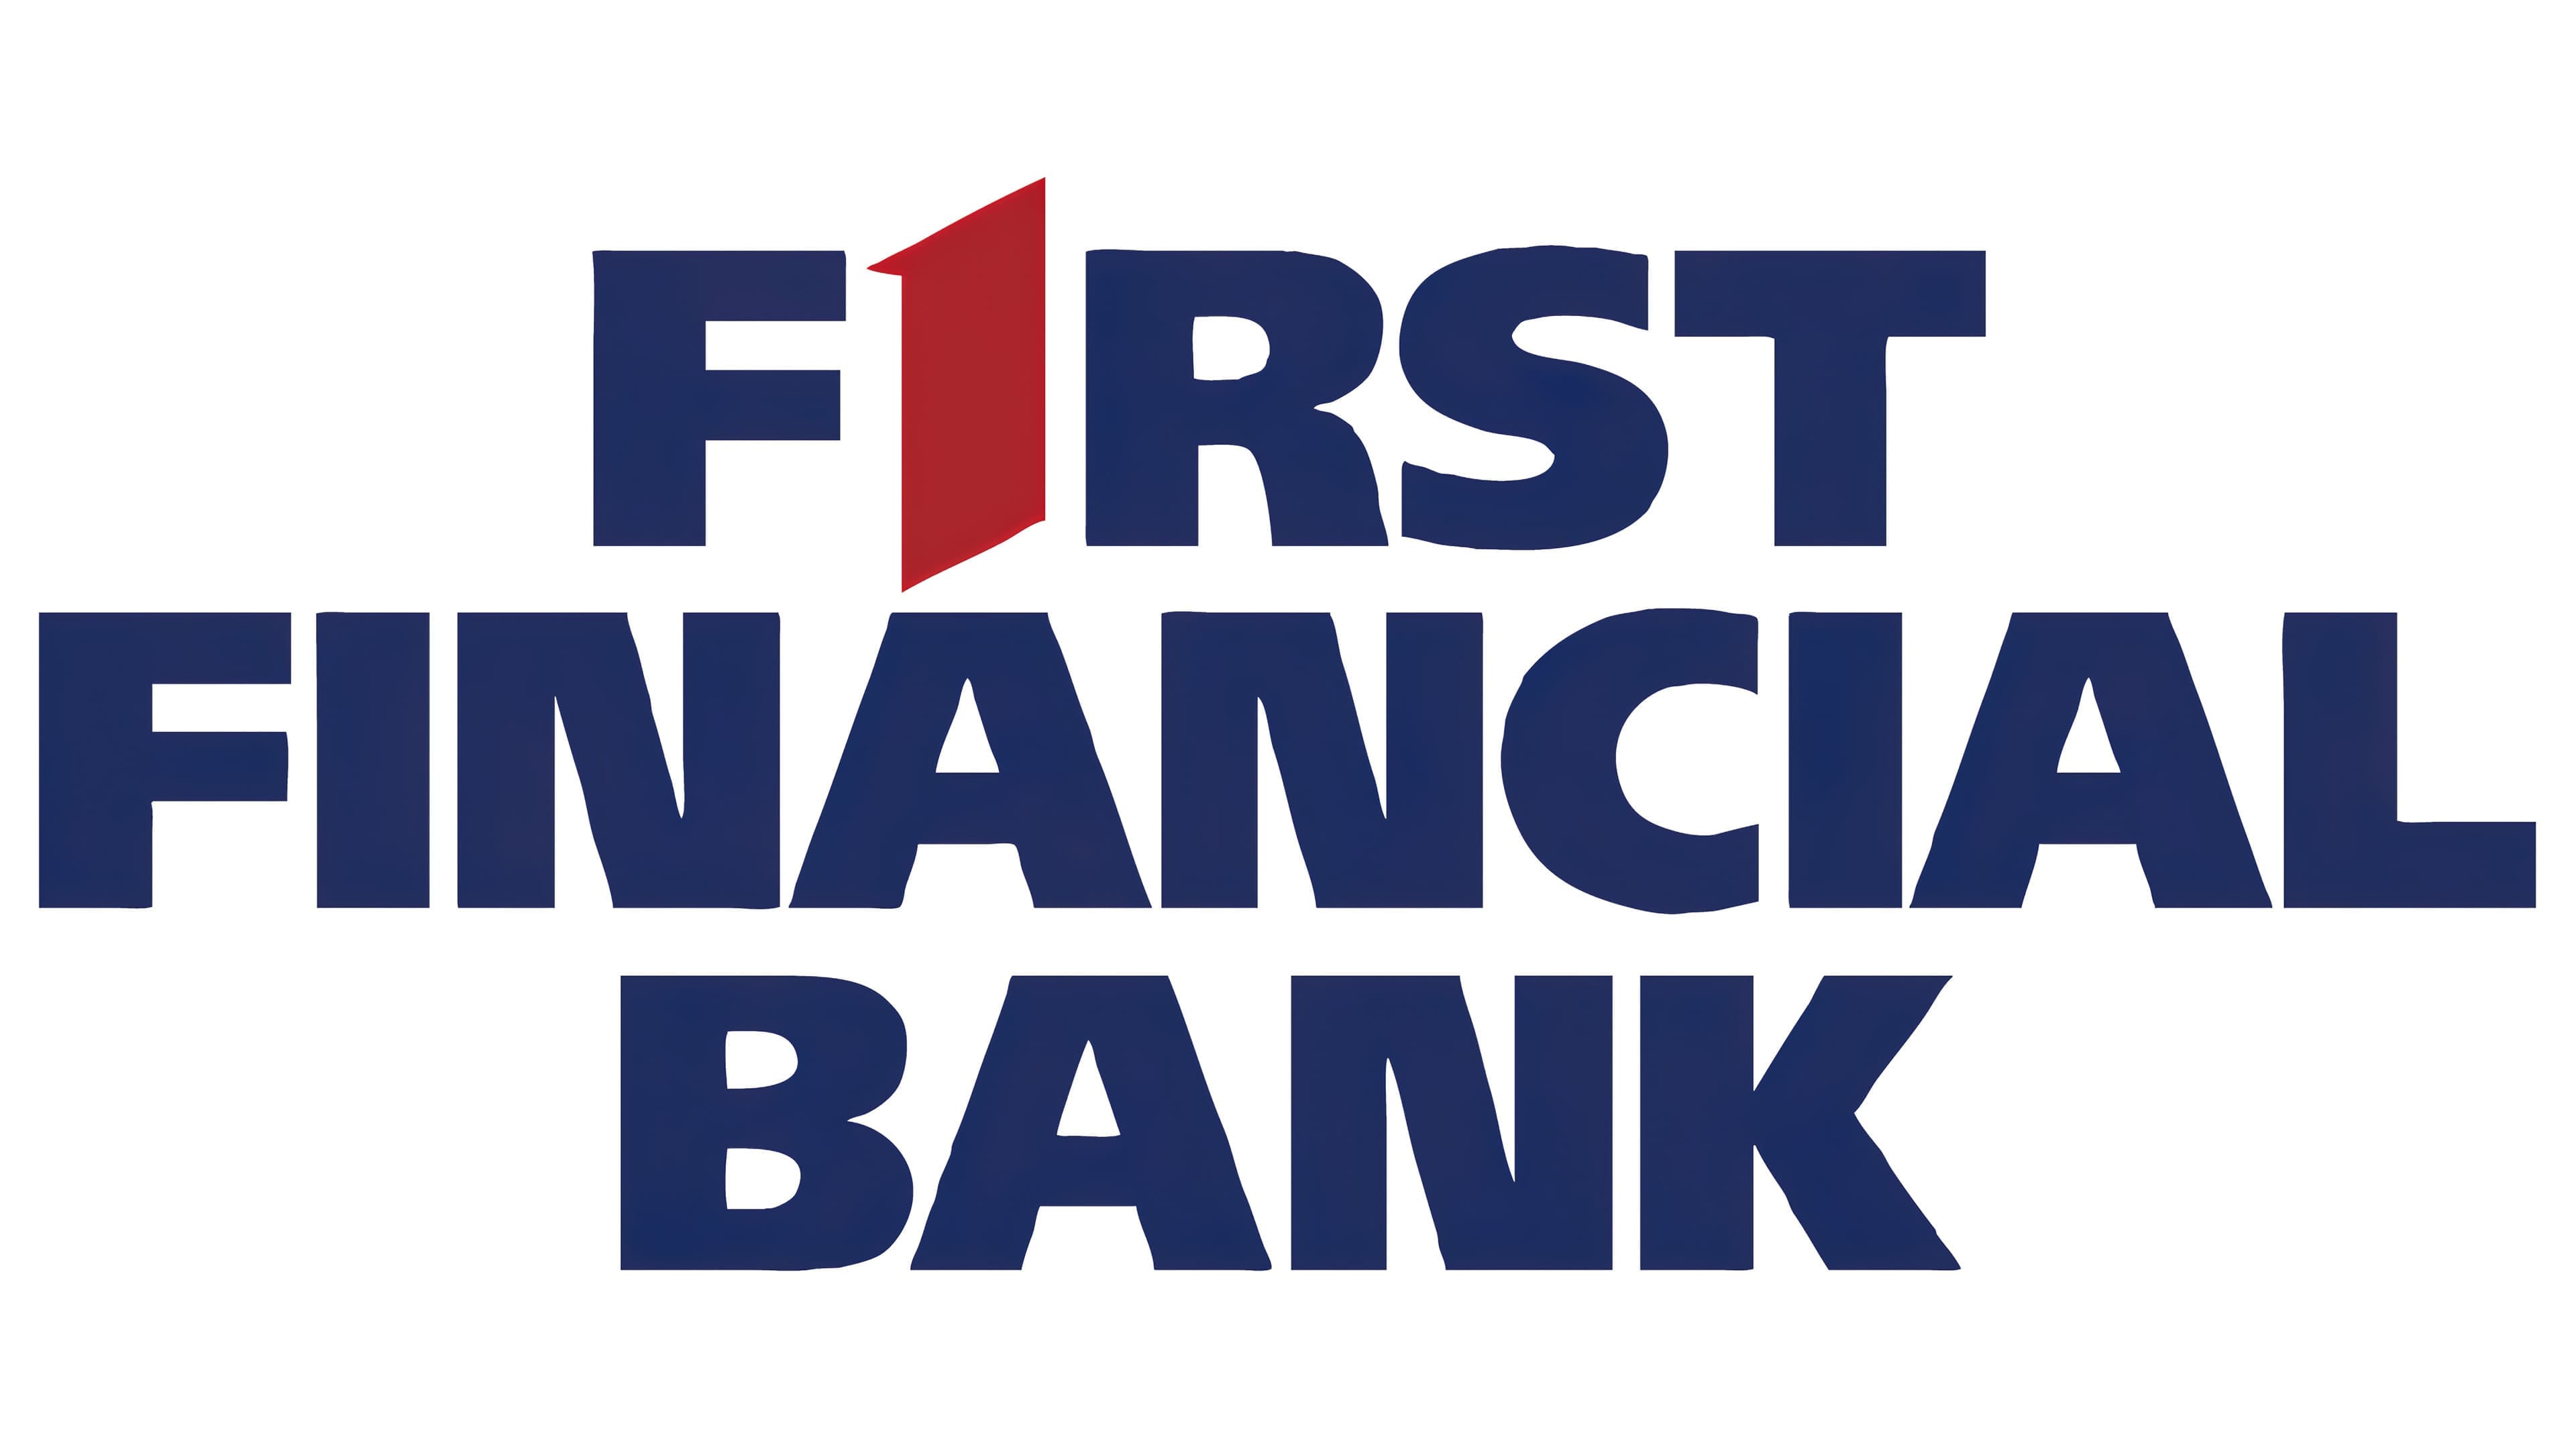 Blue Bank Logos And Names